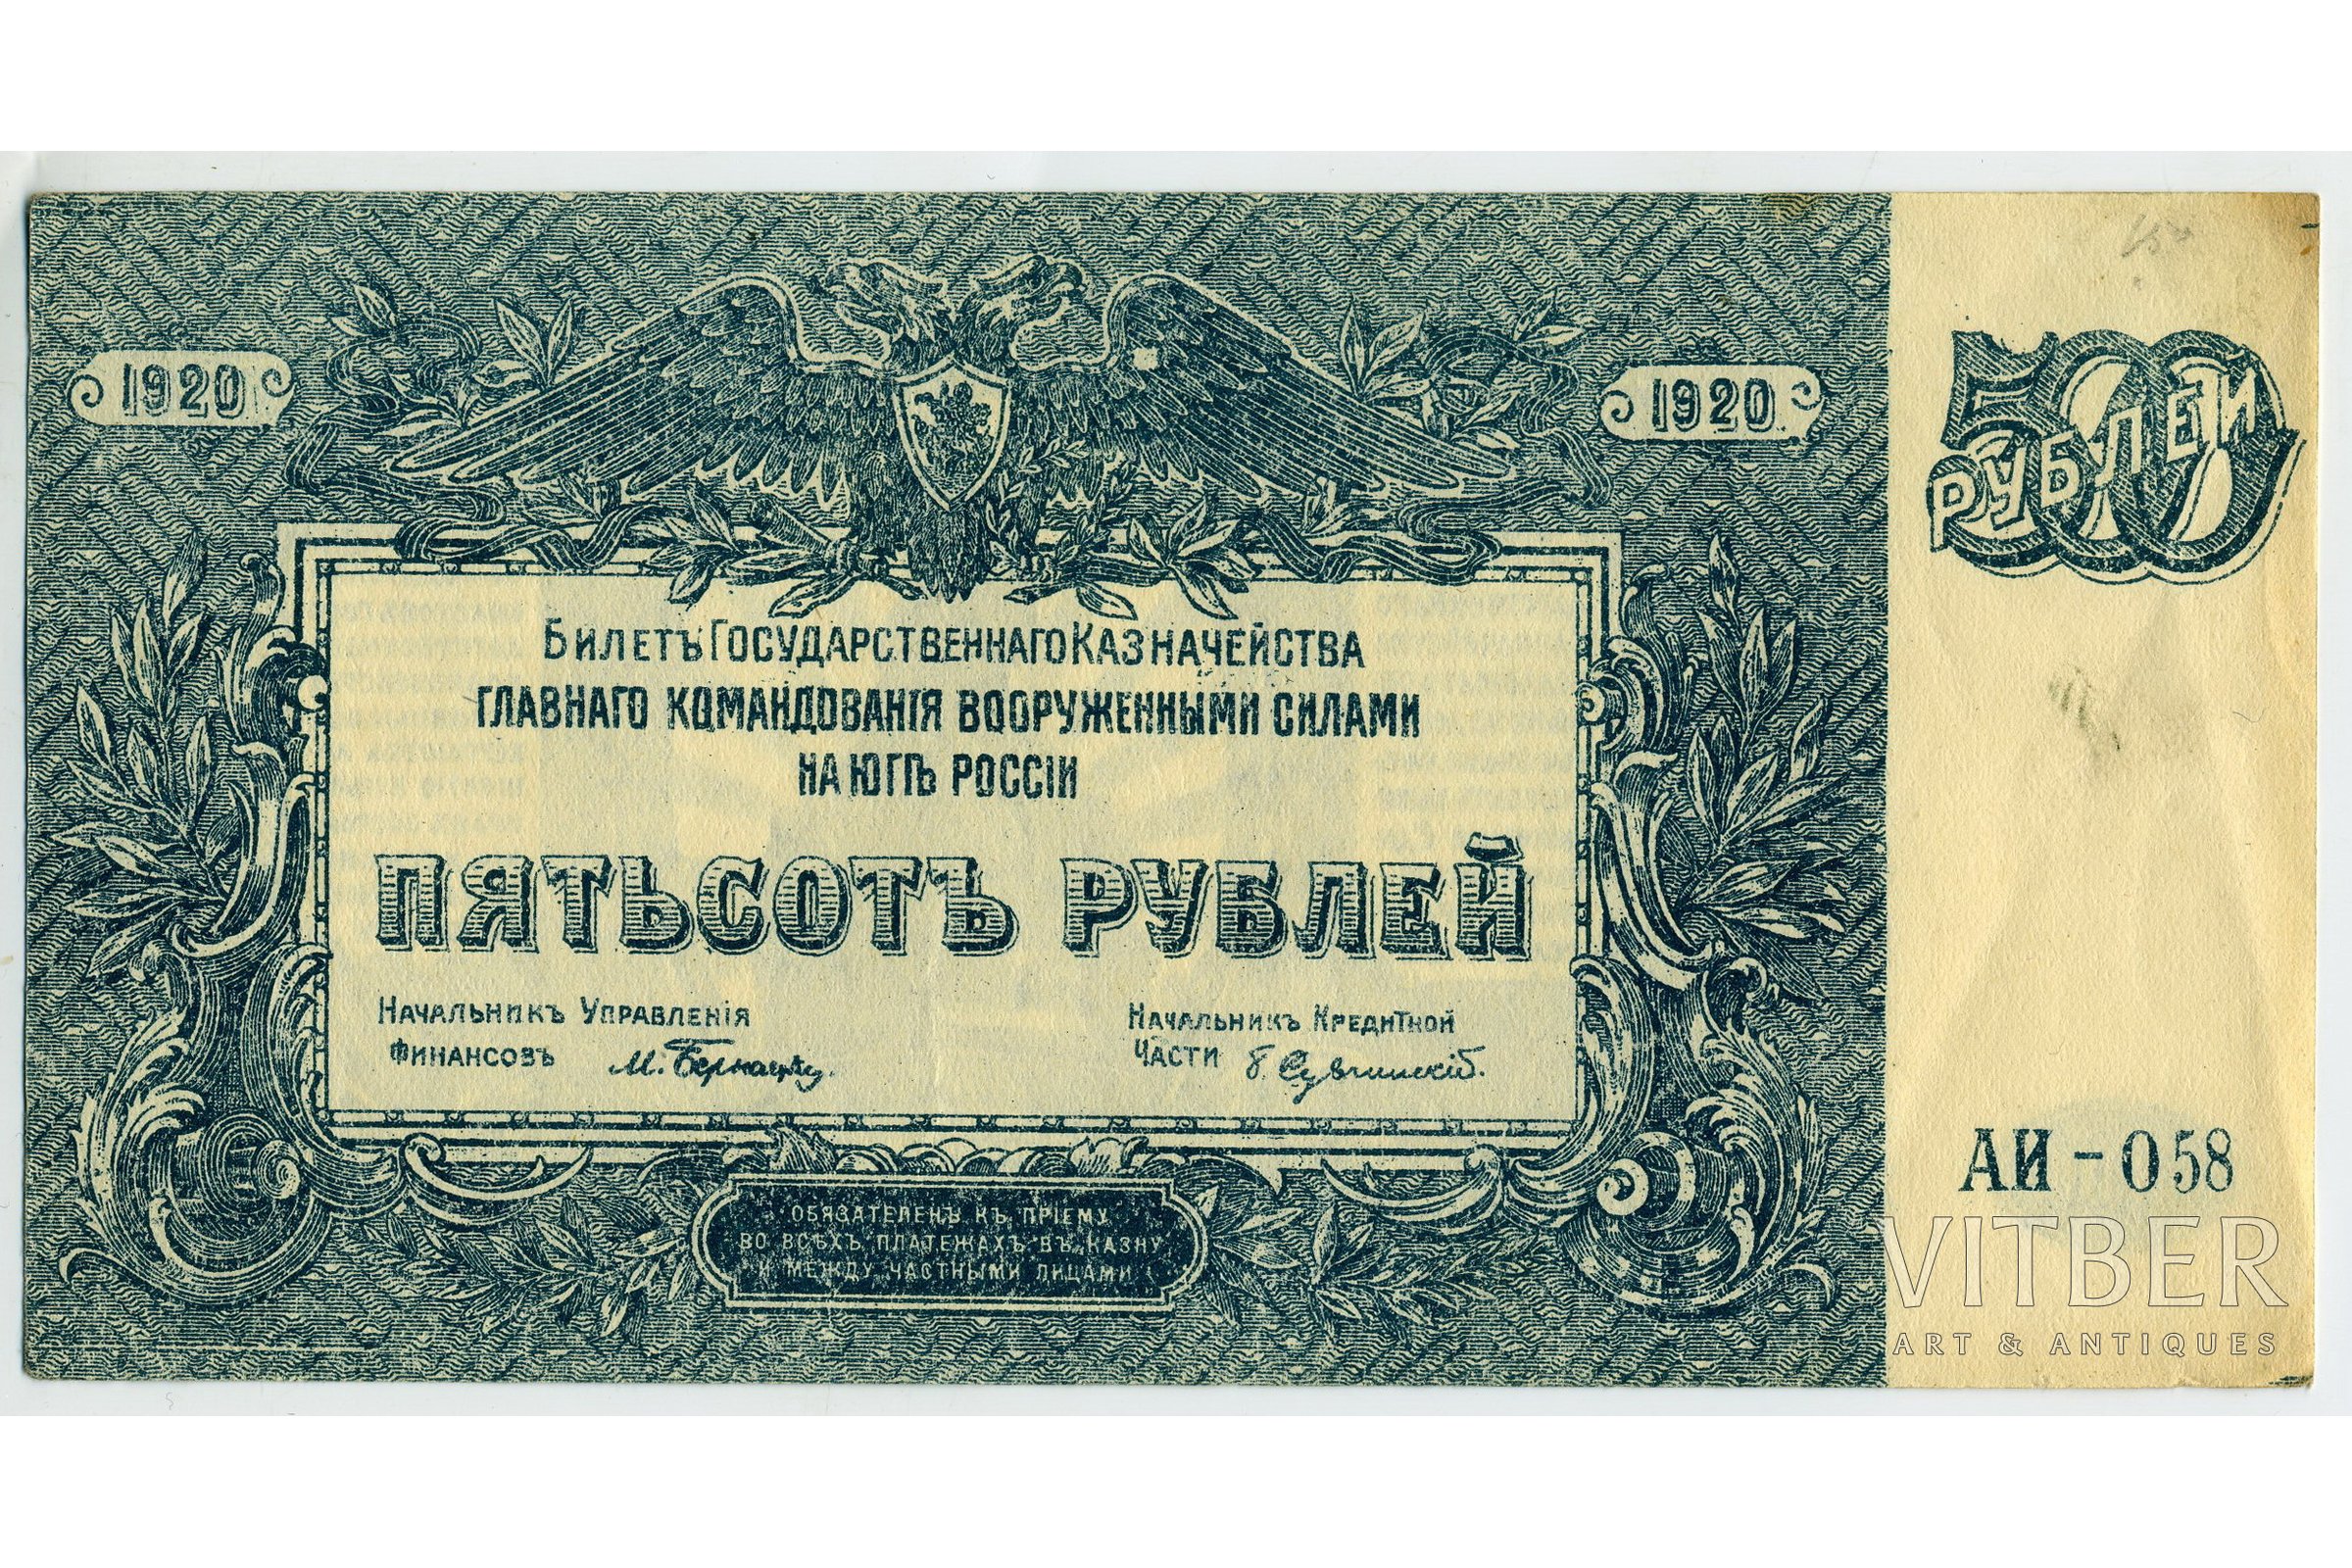 75 российских рублей. 500 Рублей 1920 года ВСЮР. 500 Рублей 1920. Билеты государственного казначейства. 500 Рублей 1920 года.